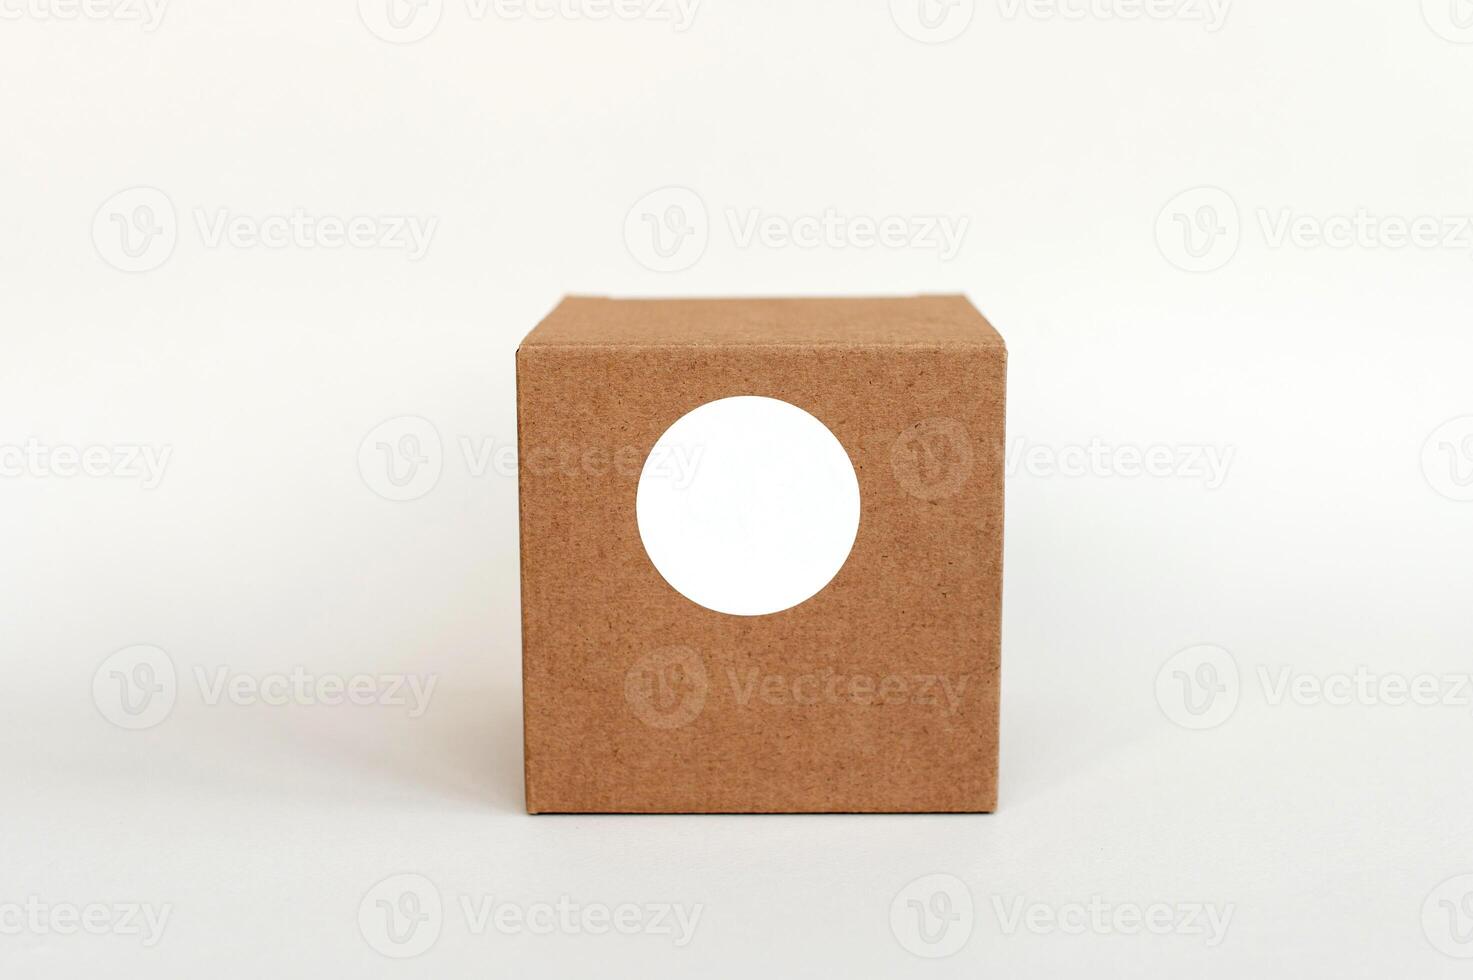 il giro etichetta modello su regalo scatola, Tech scatola e vuoto etichetta, adesivo etichetta foto